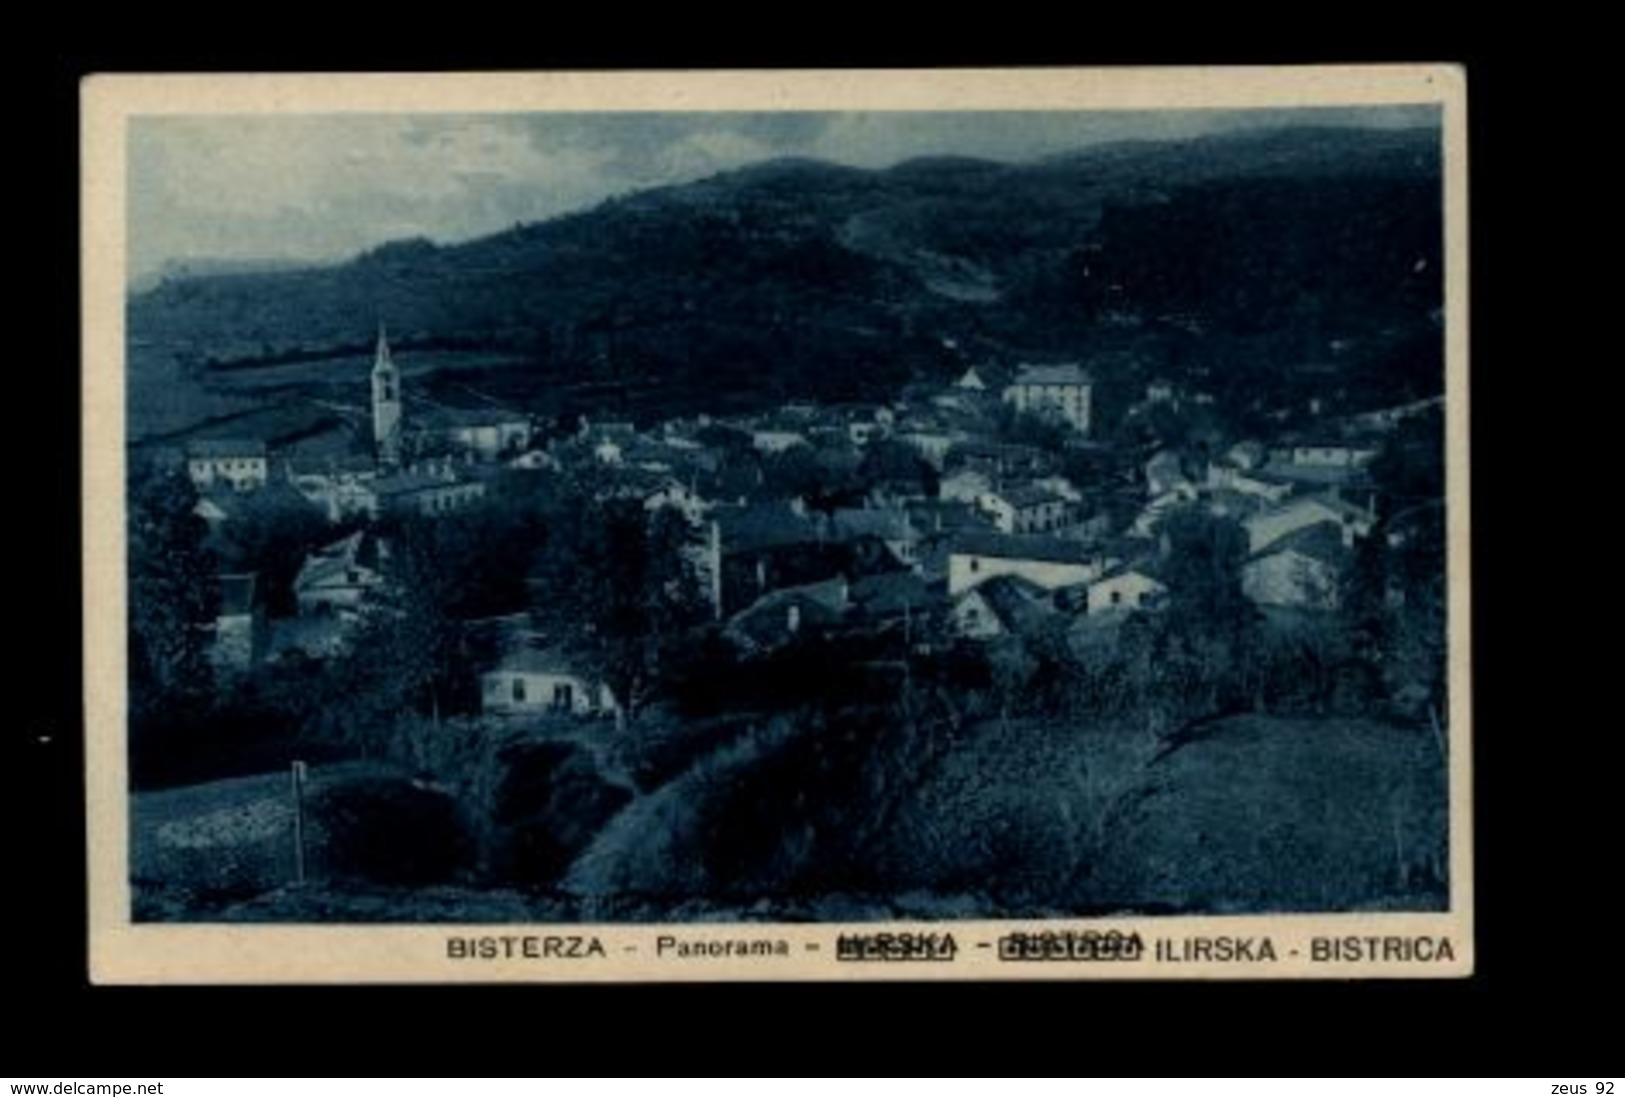 B9485 SLOVENIA ITALIANA - BISTERZA ILIRSKA BISTRICA - PANORAMA PERFETTA VIAGGIATA CON FRANCOBOLLO 1926 VILLA DEL NEVOSO - Slovenia